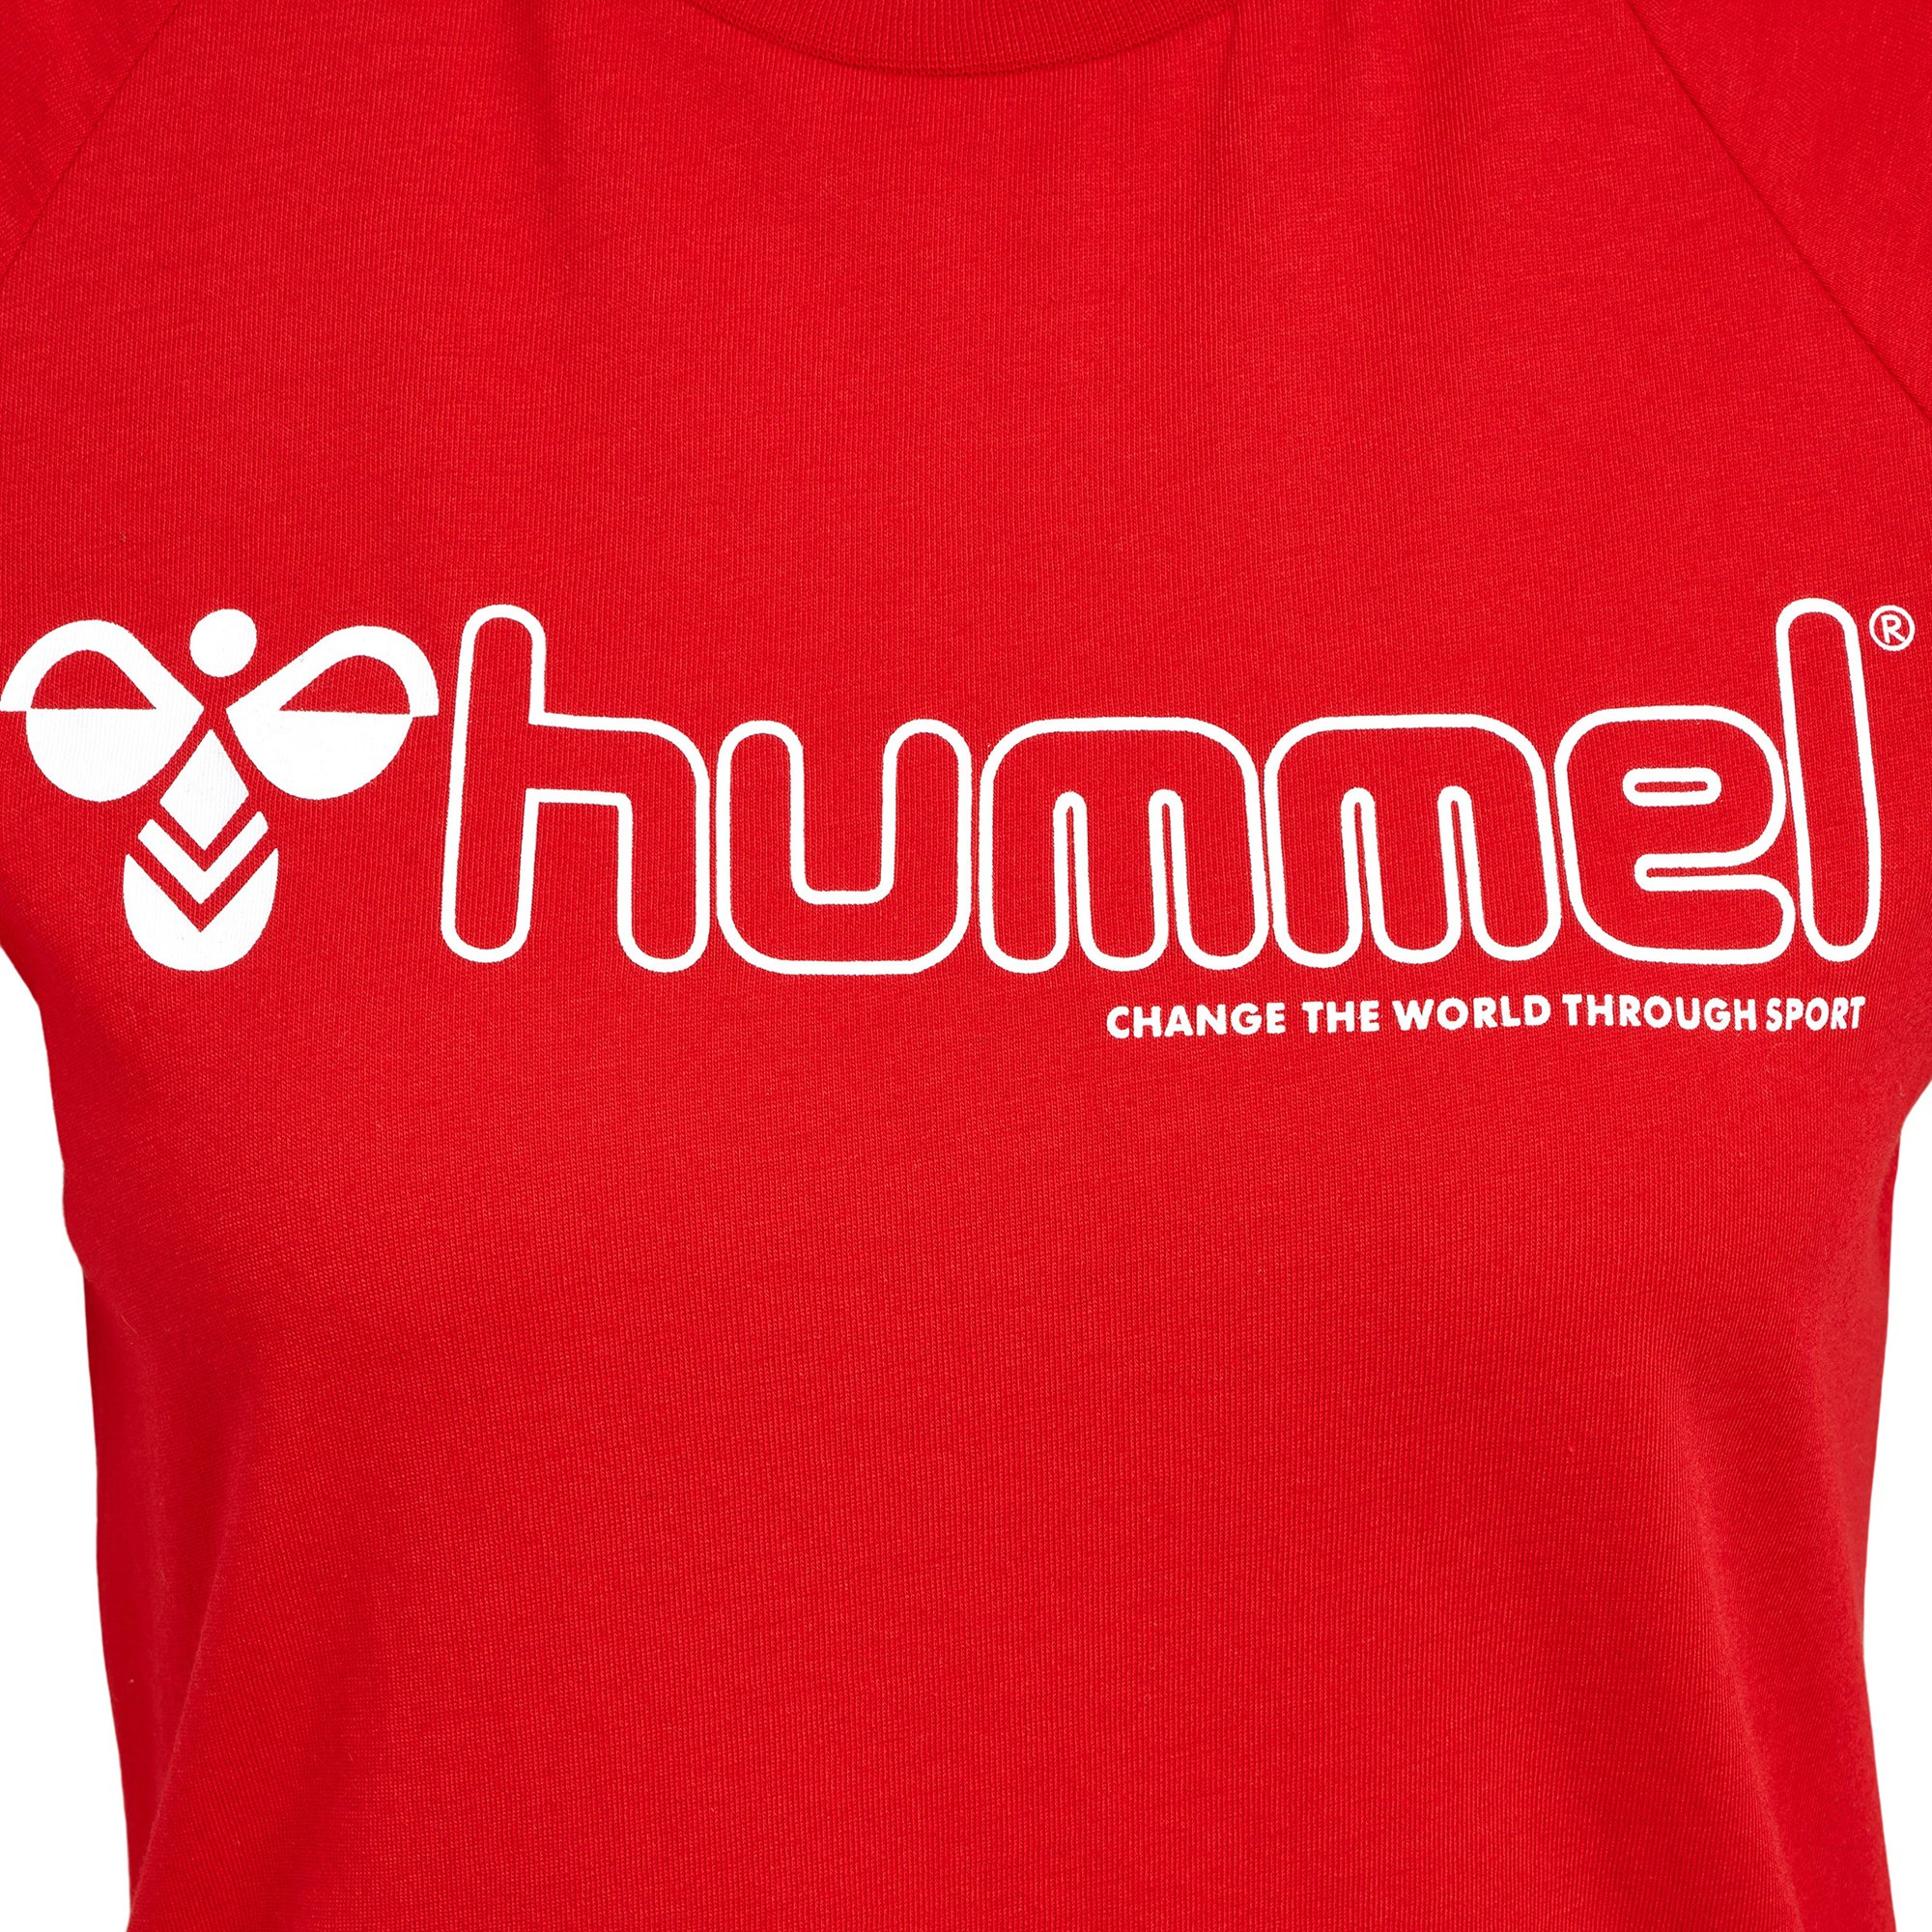 Hummel Noni 2.0 T-Shirt